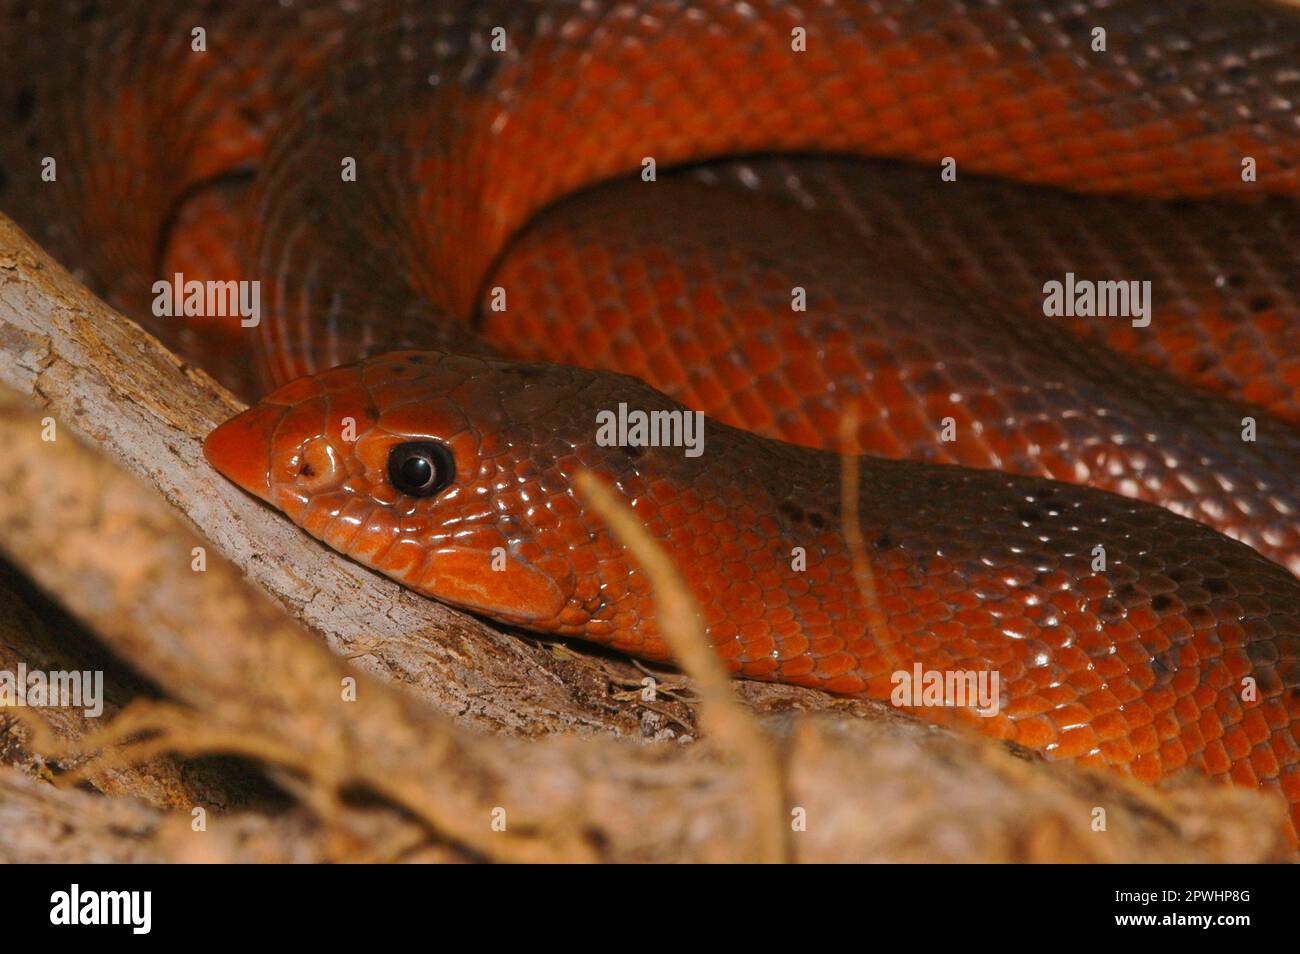 Shovelnose snake Stock Photo